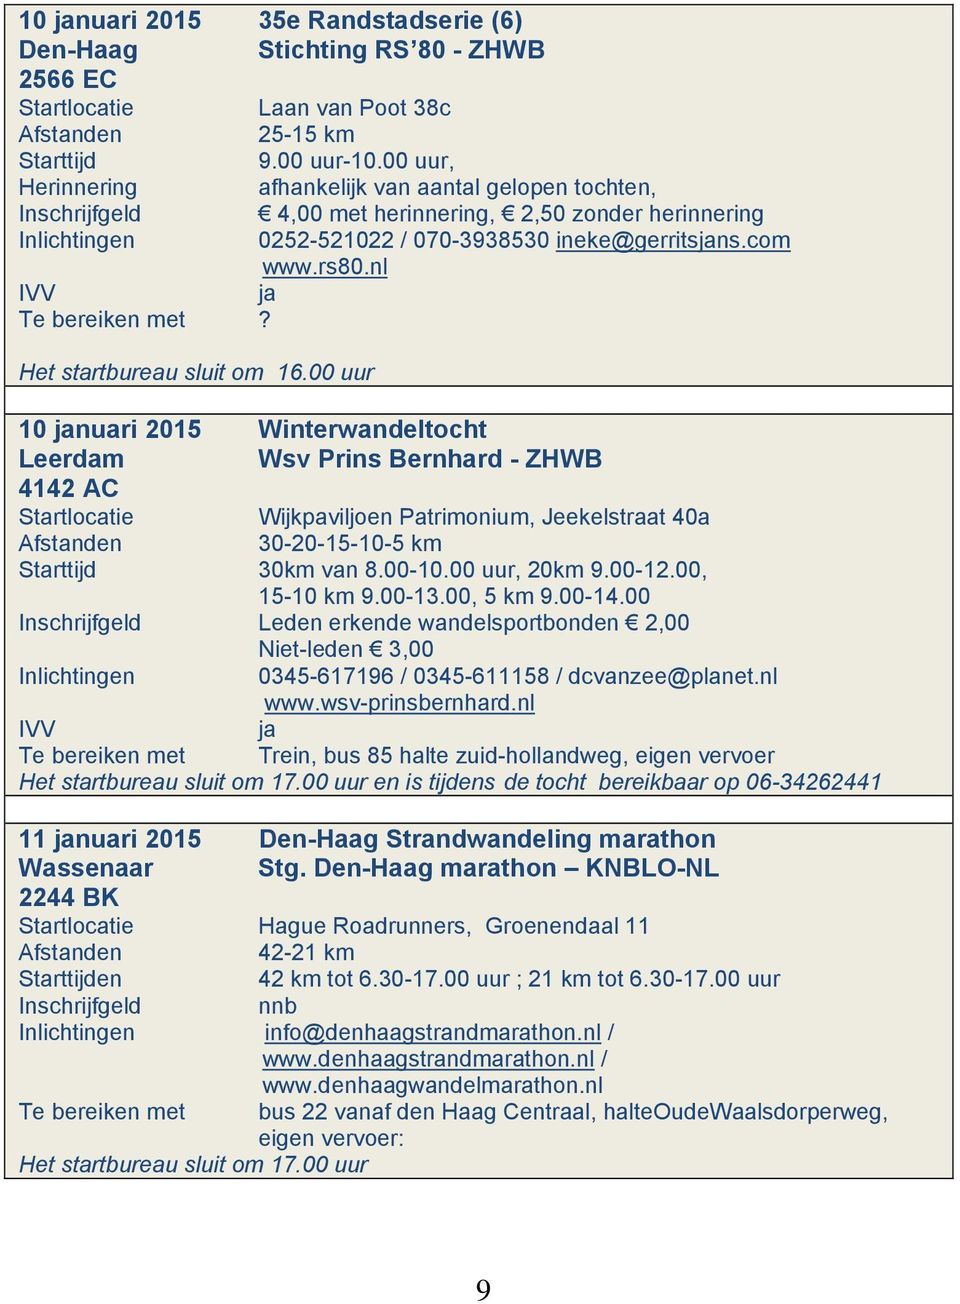 Het startbureau sluit om 16.00 uur 10 januari 2015 Winterwandeltocht Leerdam Wsv Prins Bernhard - ZHWB 4142 AC Startlocatie Wijkpaviljoen Patrimonium, Jeekelstraat 40a 30-20-15-10-5 km 30km van 8.